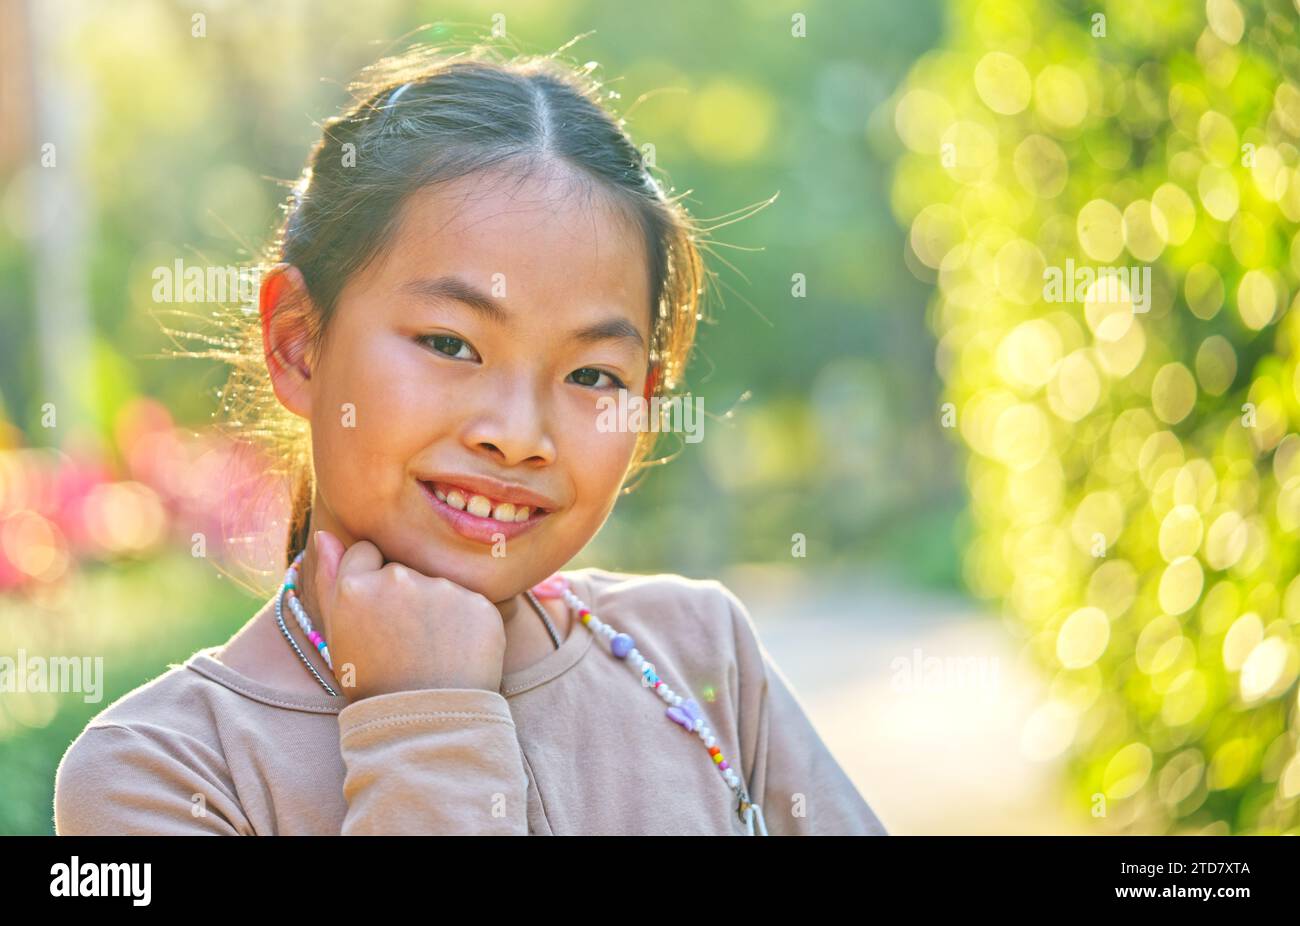 Portrait enfant fille asiatique à 9 ou 10 ans dans un jardin, portrait en gros plan, visage souriant, yeux regardant l'appareil photo, lumière naturelle du soleil par derrière, Banque D'Images